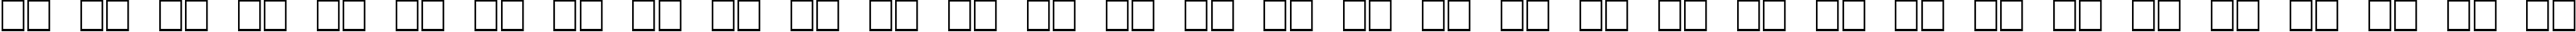 Пример написания русского алфавита шрифтом Boron Regular